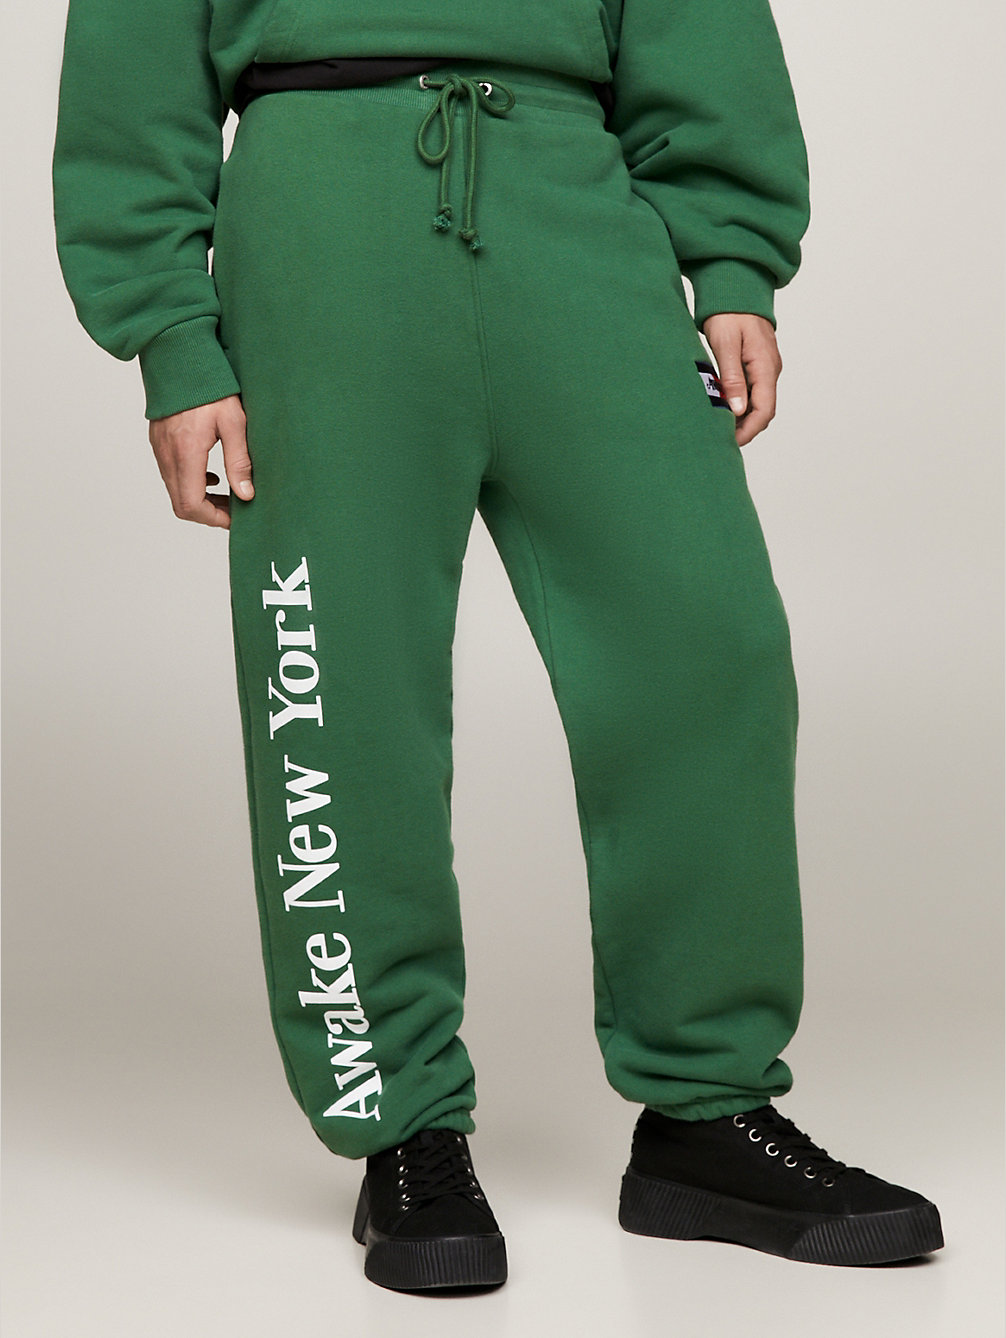 joggers amplios con logo tommy x awake ny green de hombre tommy jeans